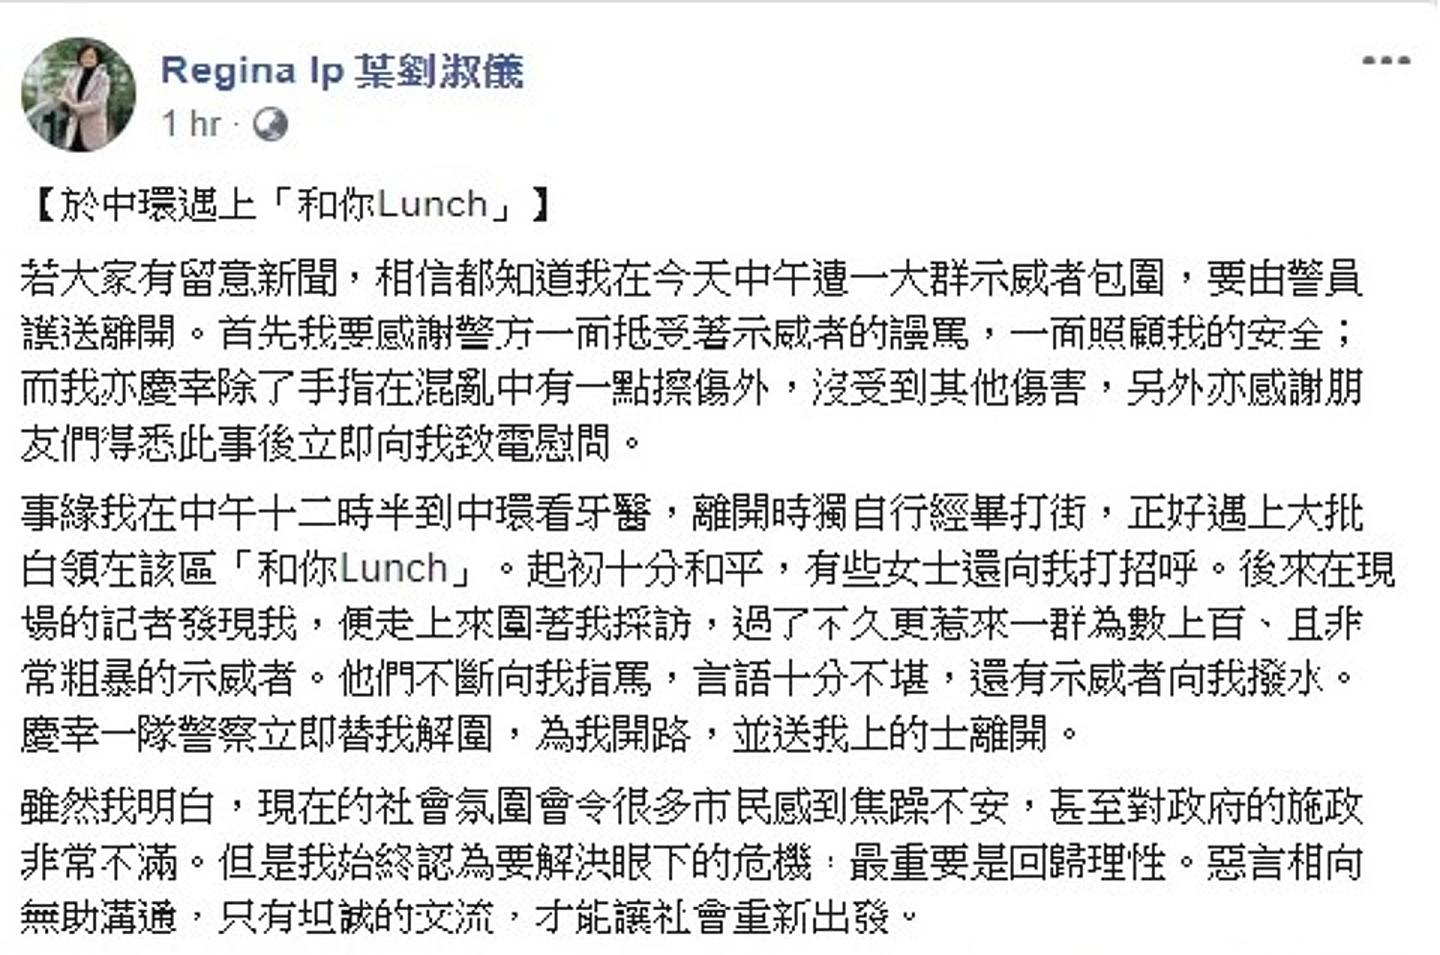 叶刘晚上于其facebook 帖文，讲述在中环撞正「和你Lunch」的事发经过。